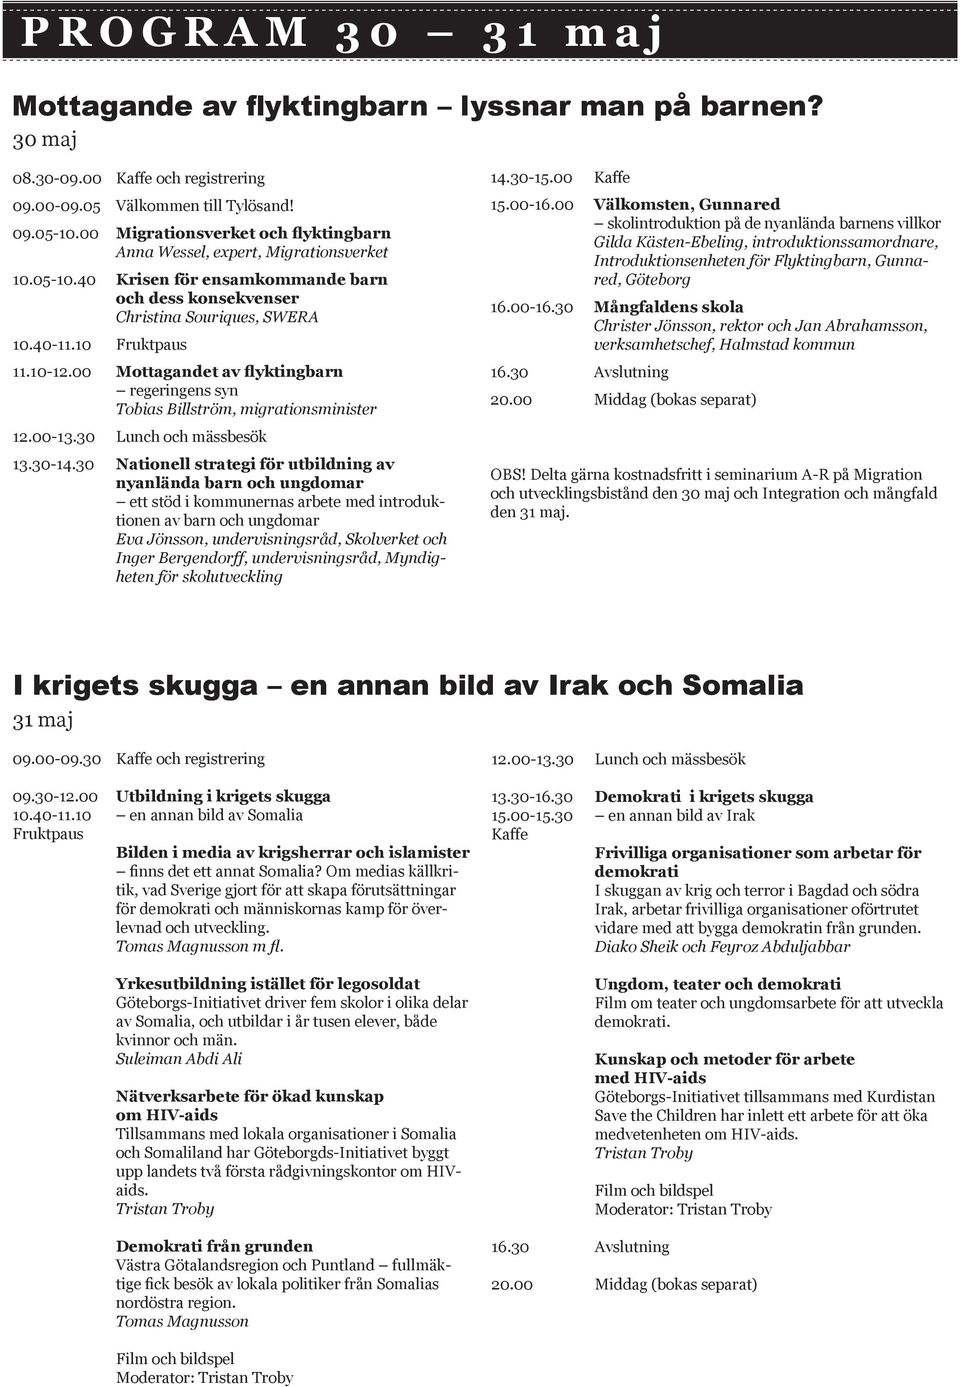 00 Mottagandet av flyktingbarn regeringens syn Tobias Billström, migrationsminister 14.30-15.00 Kaffe 15.00-16.